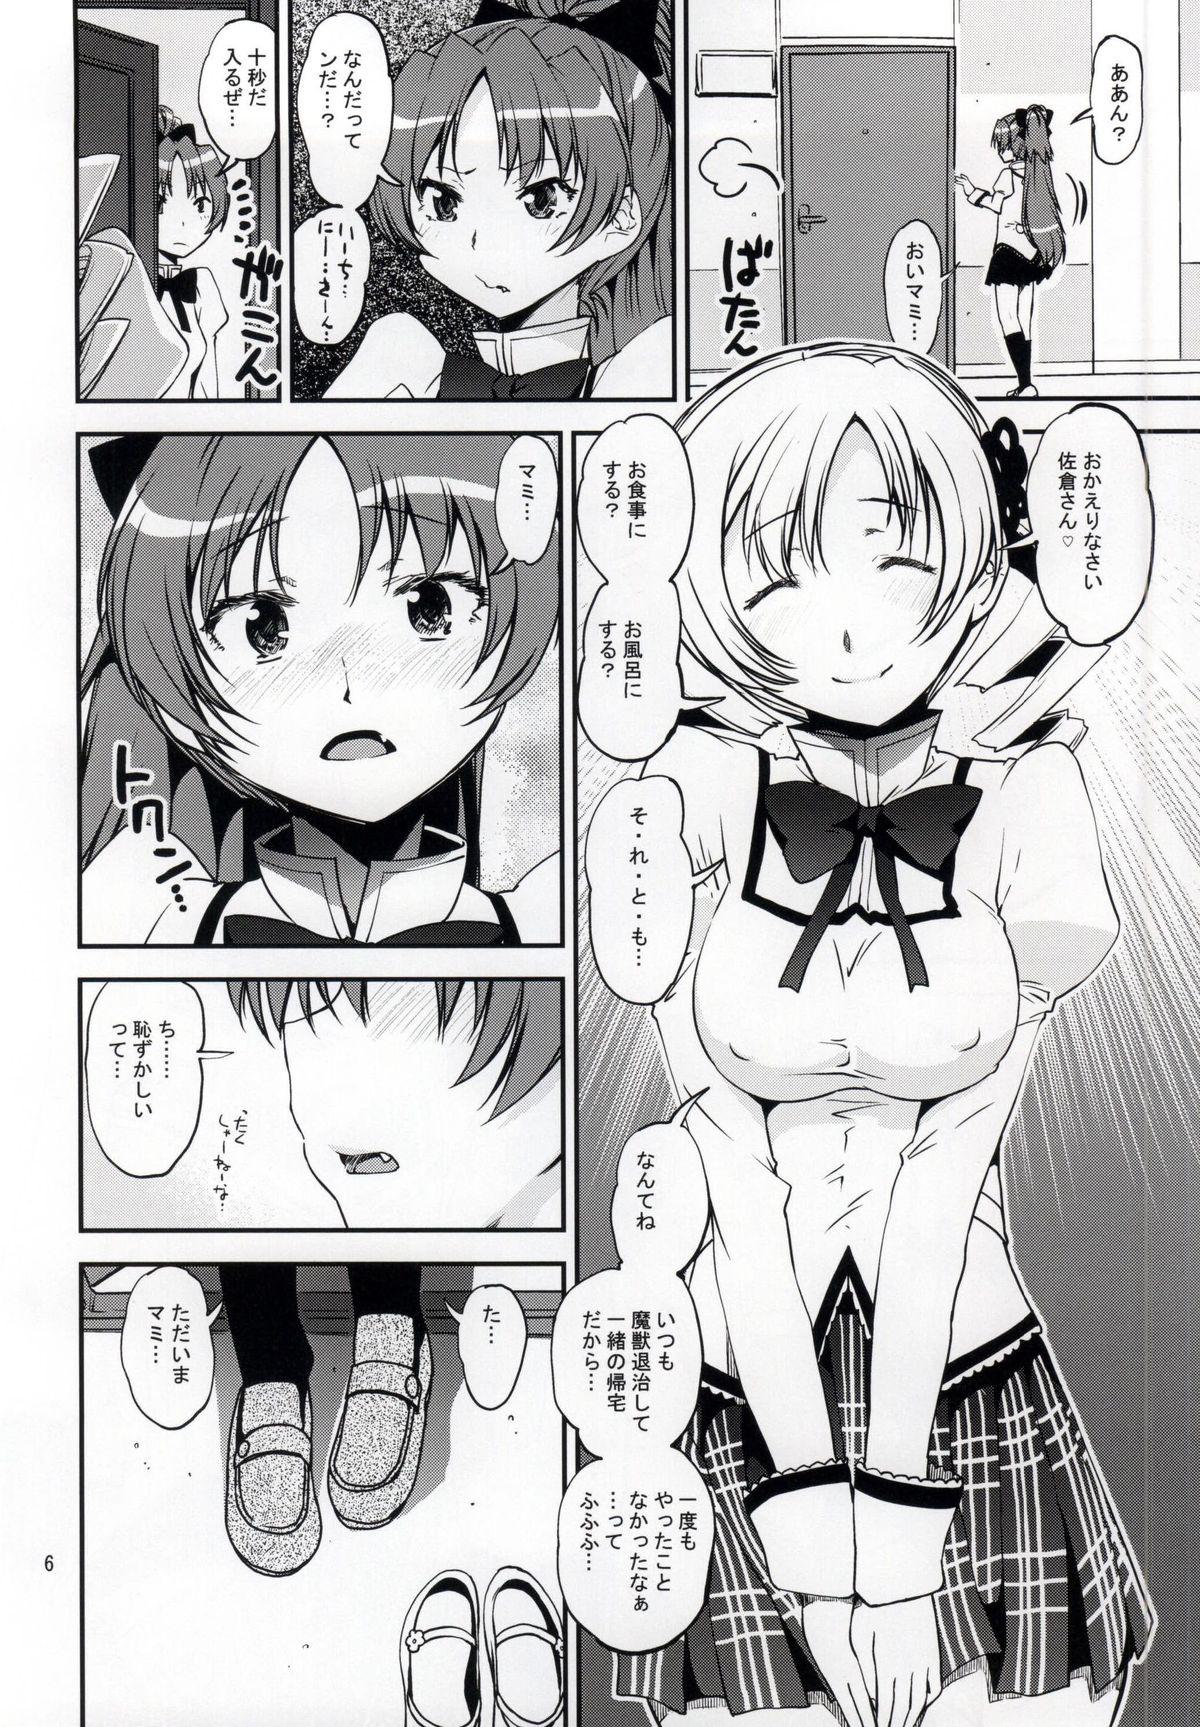 Swallowing Yottsu no "Hajimete" - Puella magi madoka magica Putita - Page 3